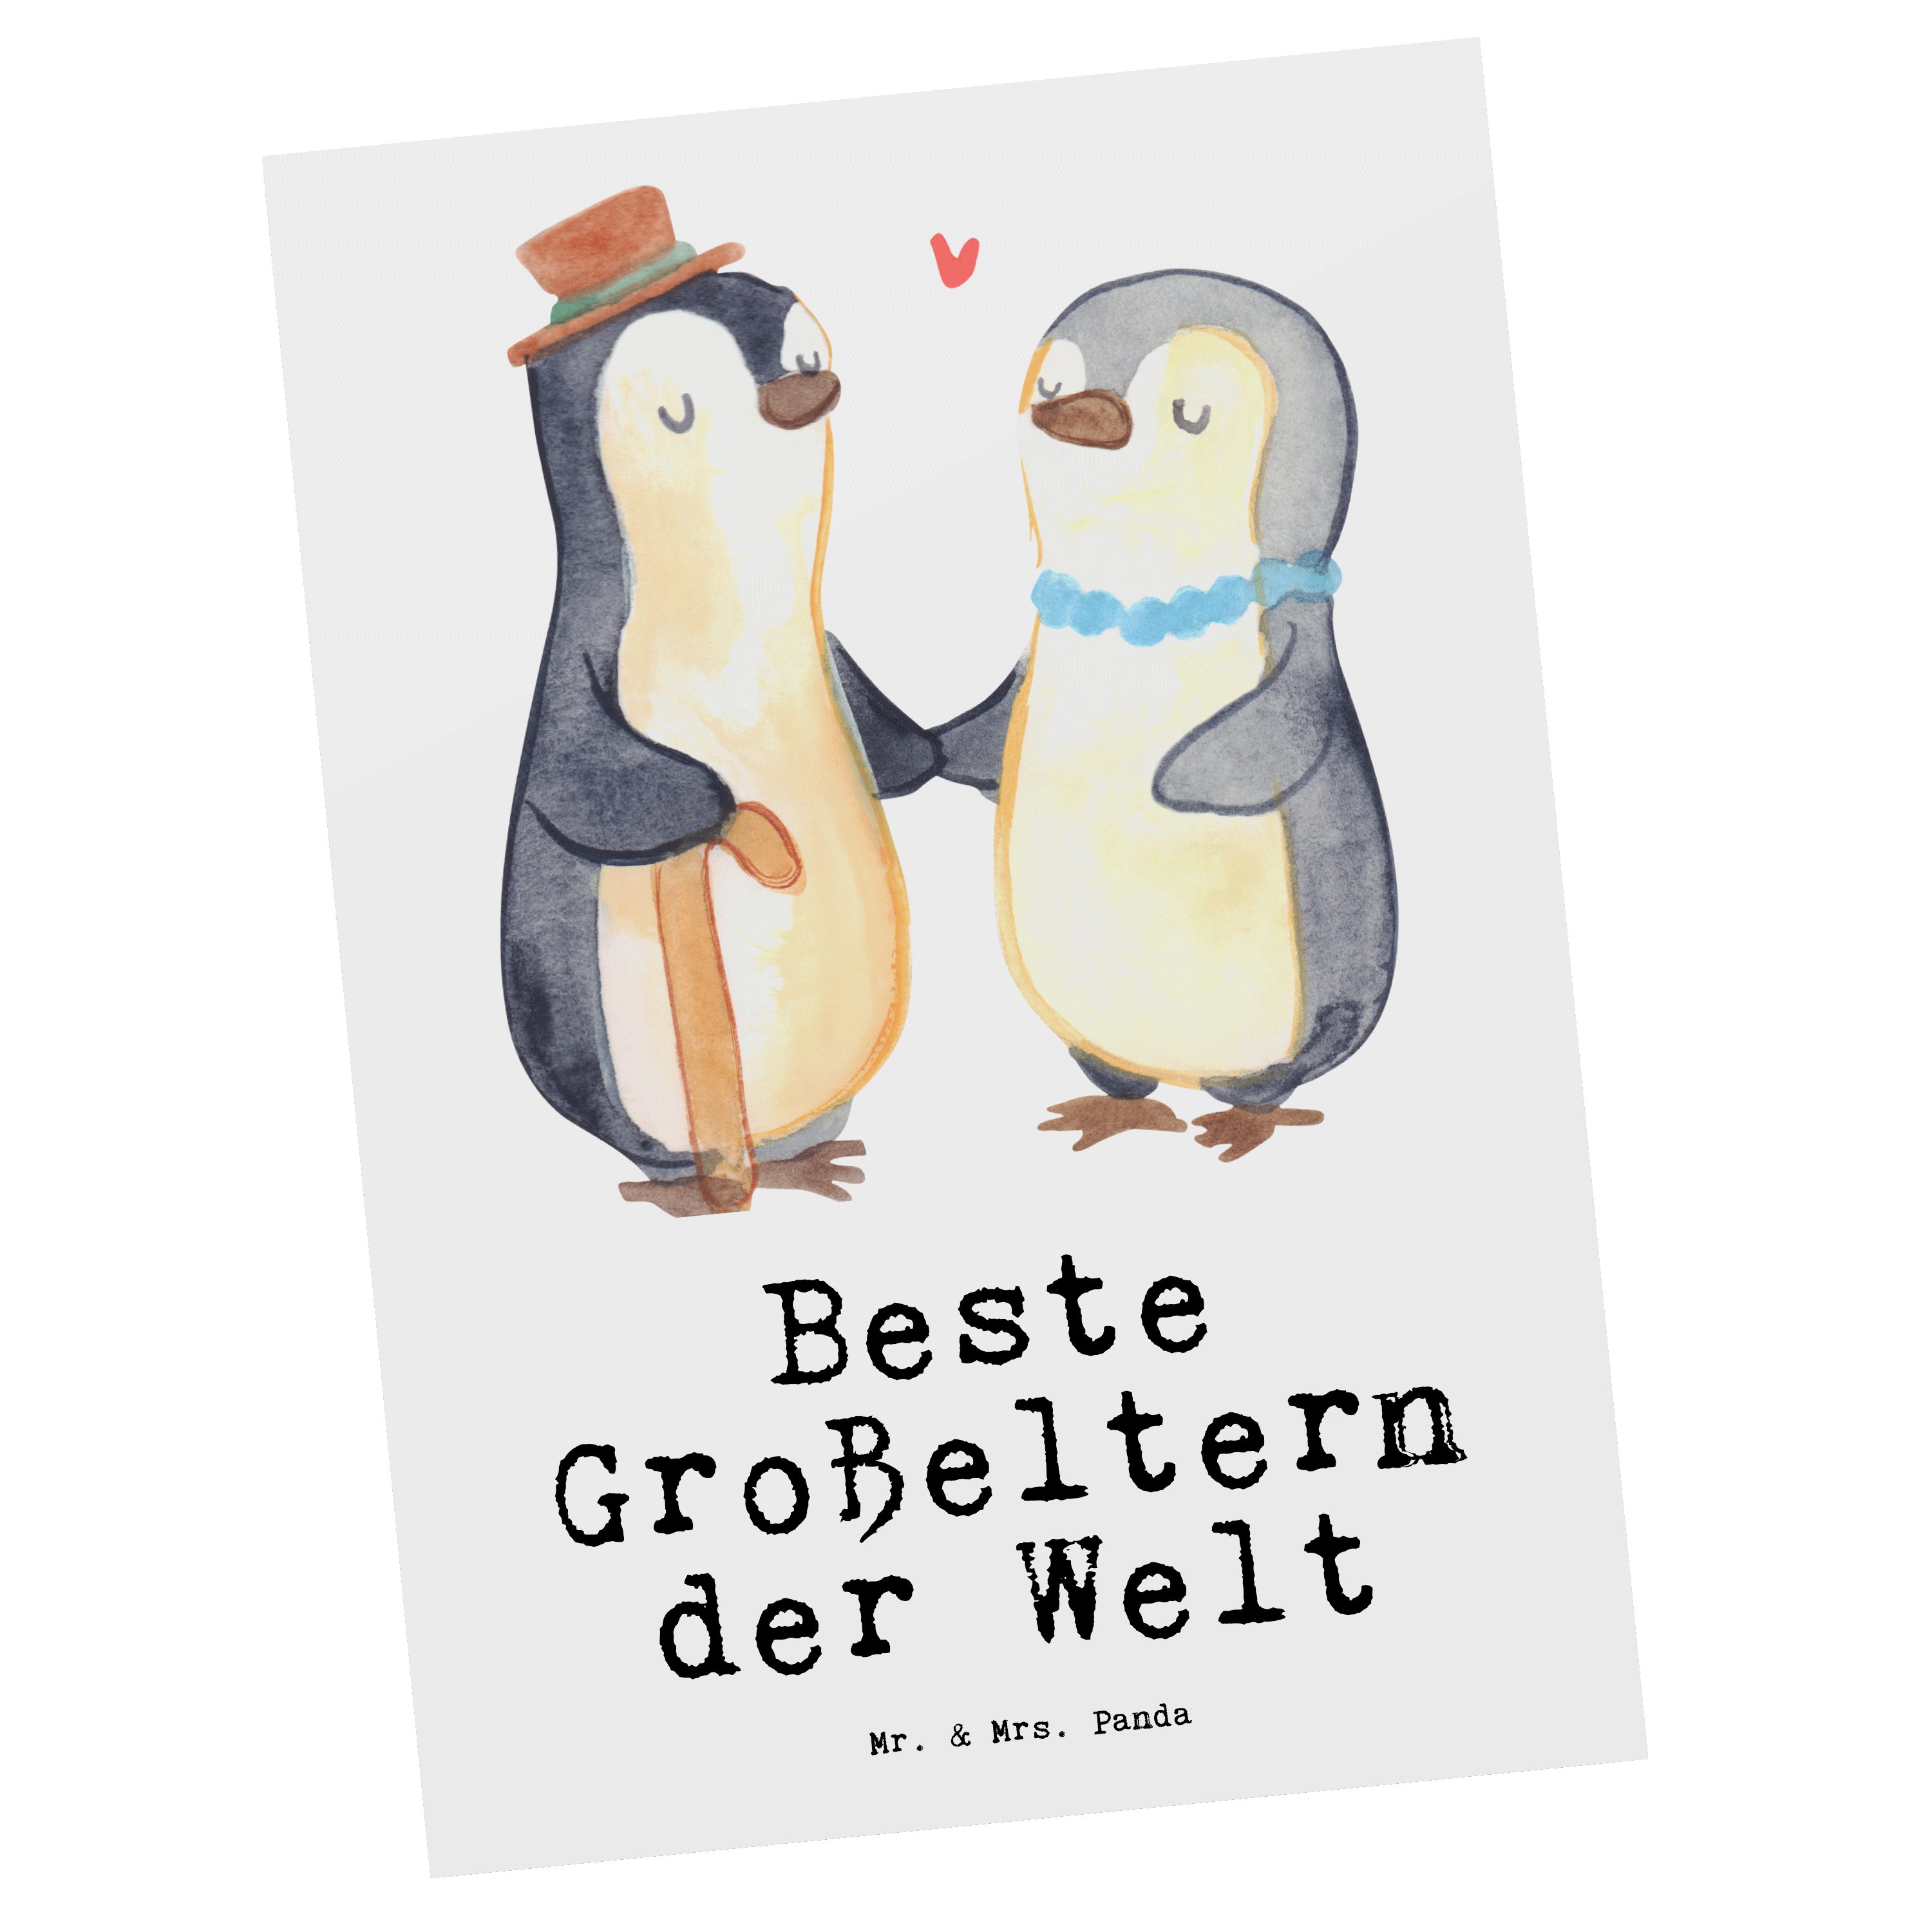 Welt Geschenk, Oma Pinguin Mrs. - Postkarte & Beste der Weiß Mr. Panda - Großeltern Grußkarte,